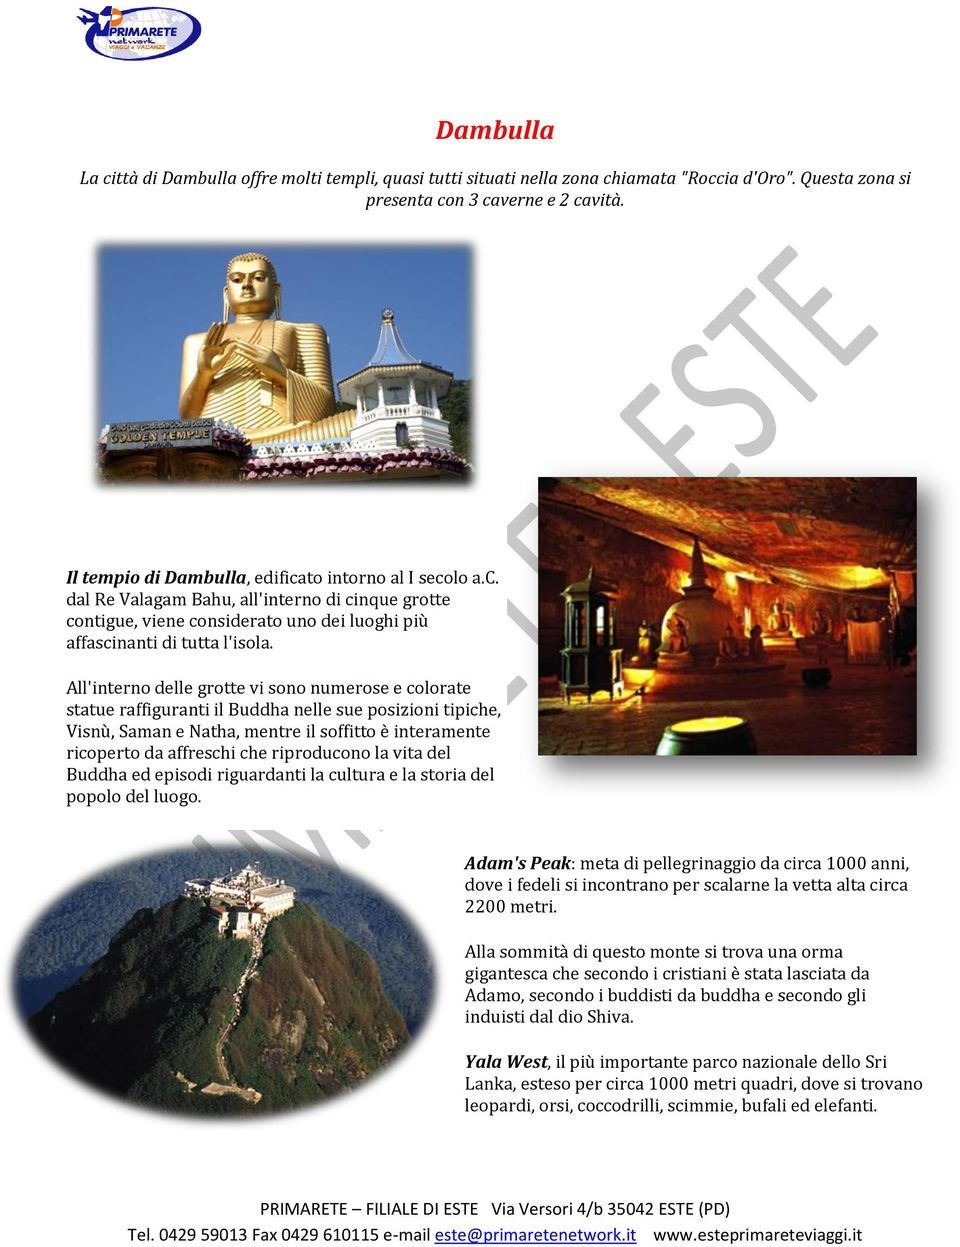 All'interno delle grotte vi sono numerose e colorate statue raffiguranti il Buddha nelle sue posizioni tipiche, Visnù, Saman e Natha, mentre il soffitto è interamente ricoperto da affreschi che